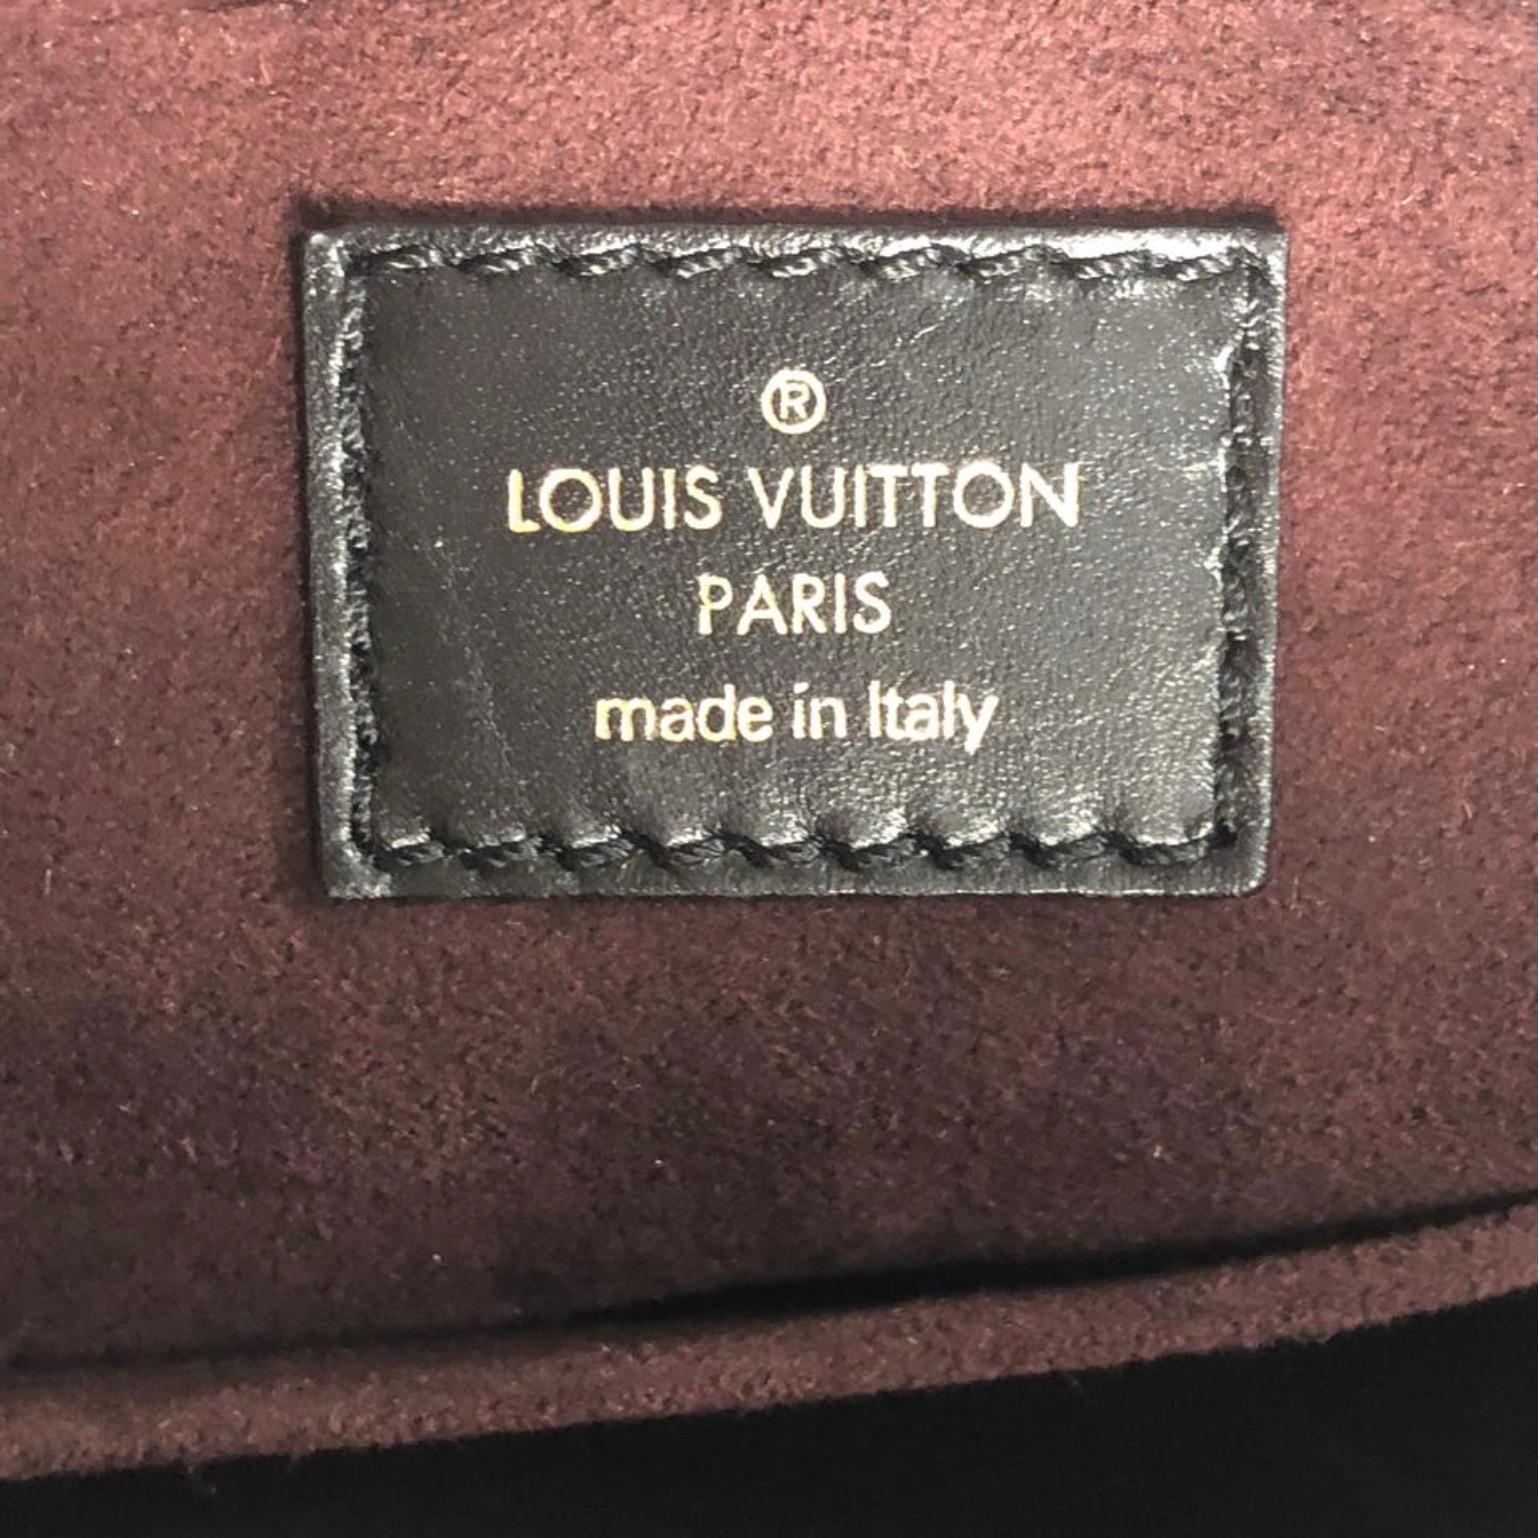 Louis Vuitton Vienna Leather Mizi Satchel Handbag 5